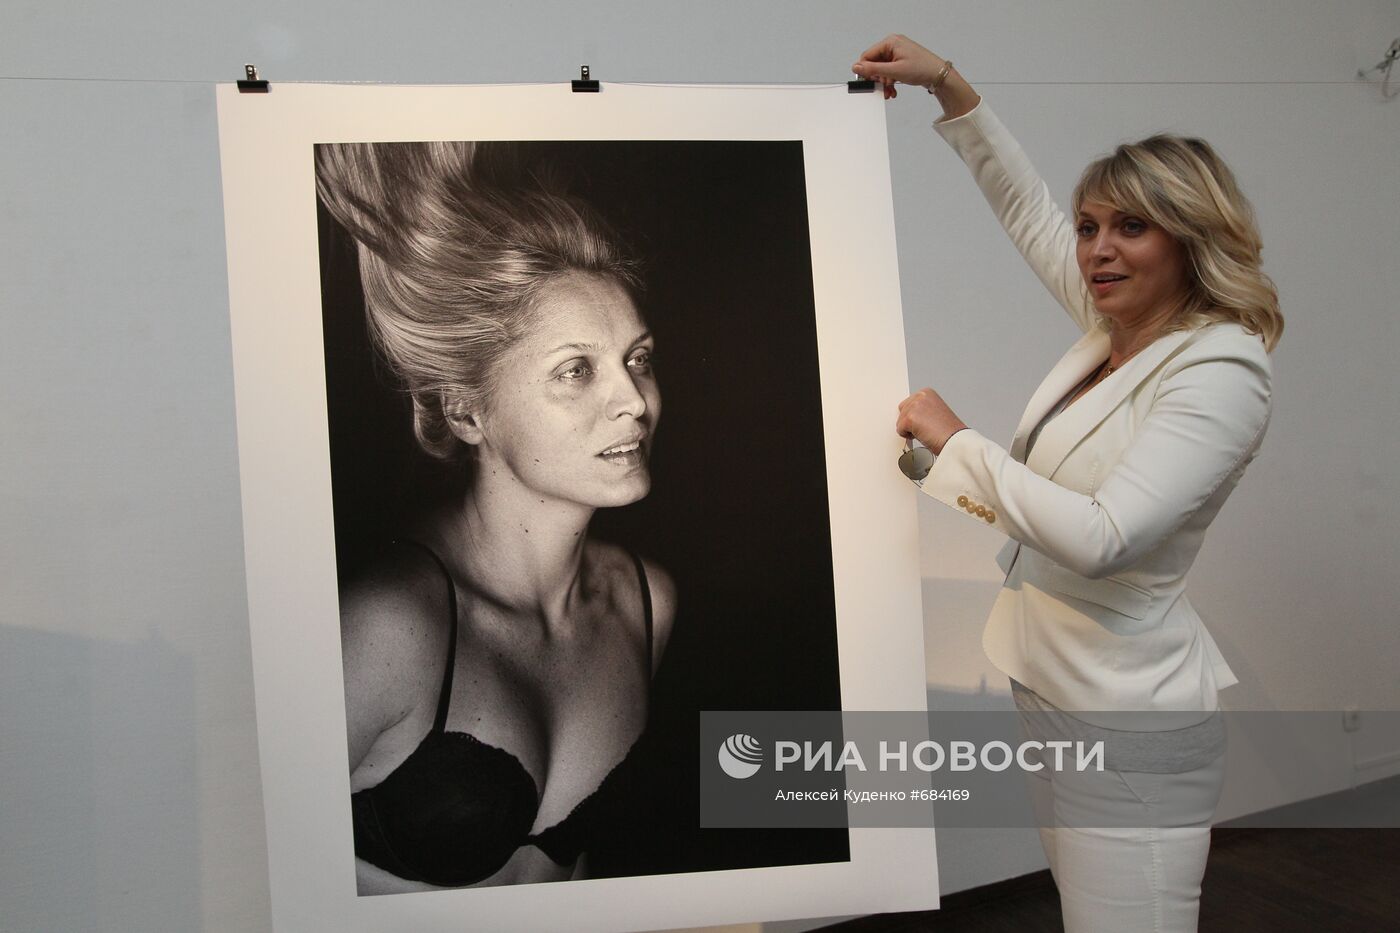 Открытие выставки фотографа Влада Локтева "Без макияжа"